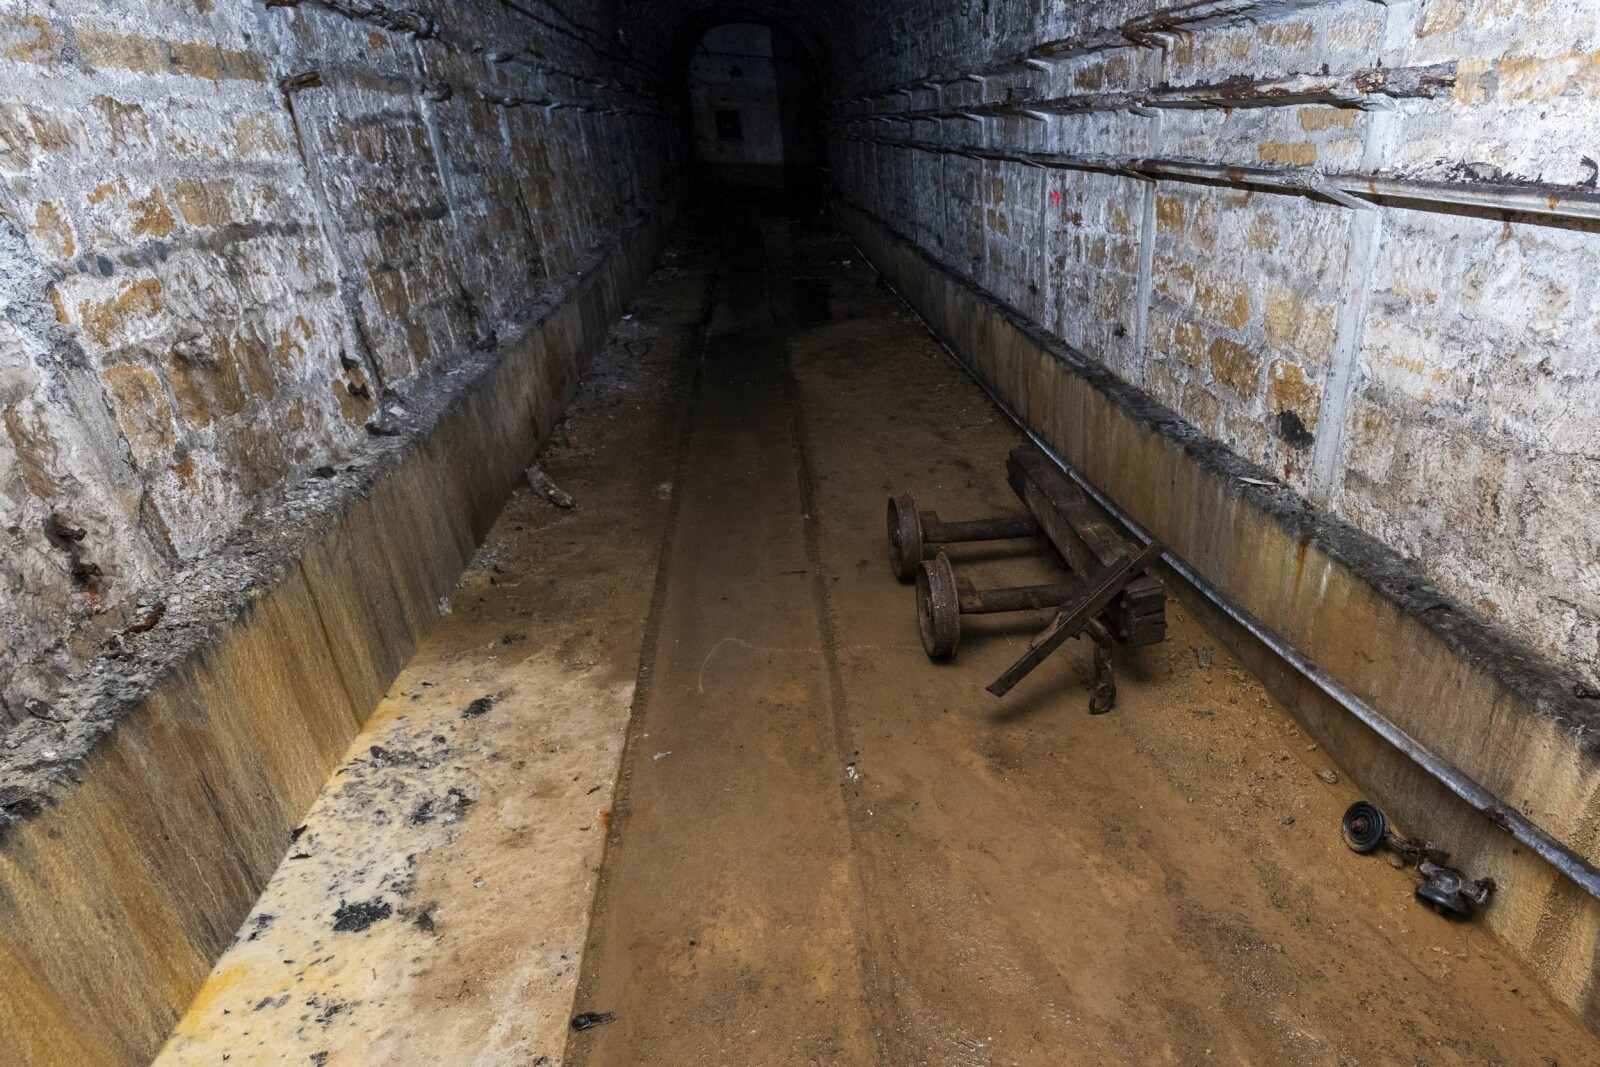 <b>VOGN:</b> Restene av en vogn. Kanskje fra vognsettet som fraktet kong Georg VI rundt i labyrinten?